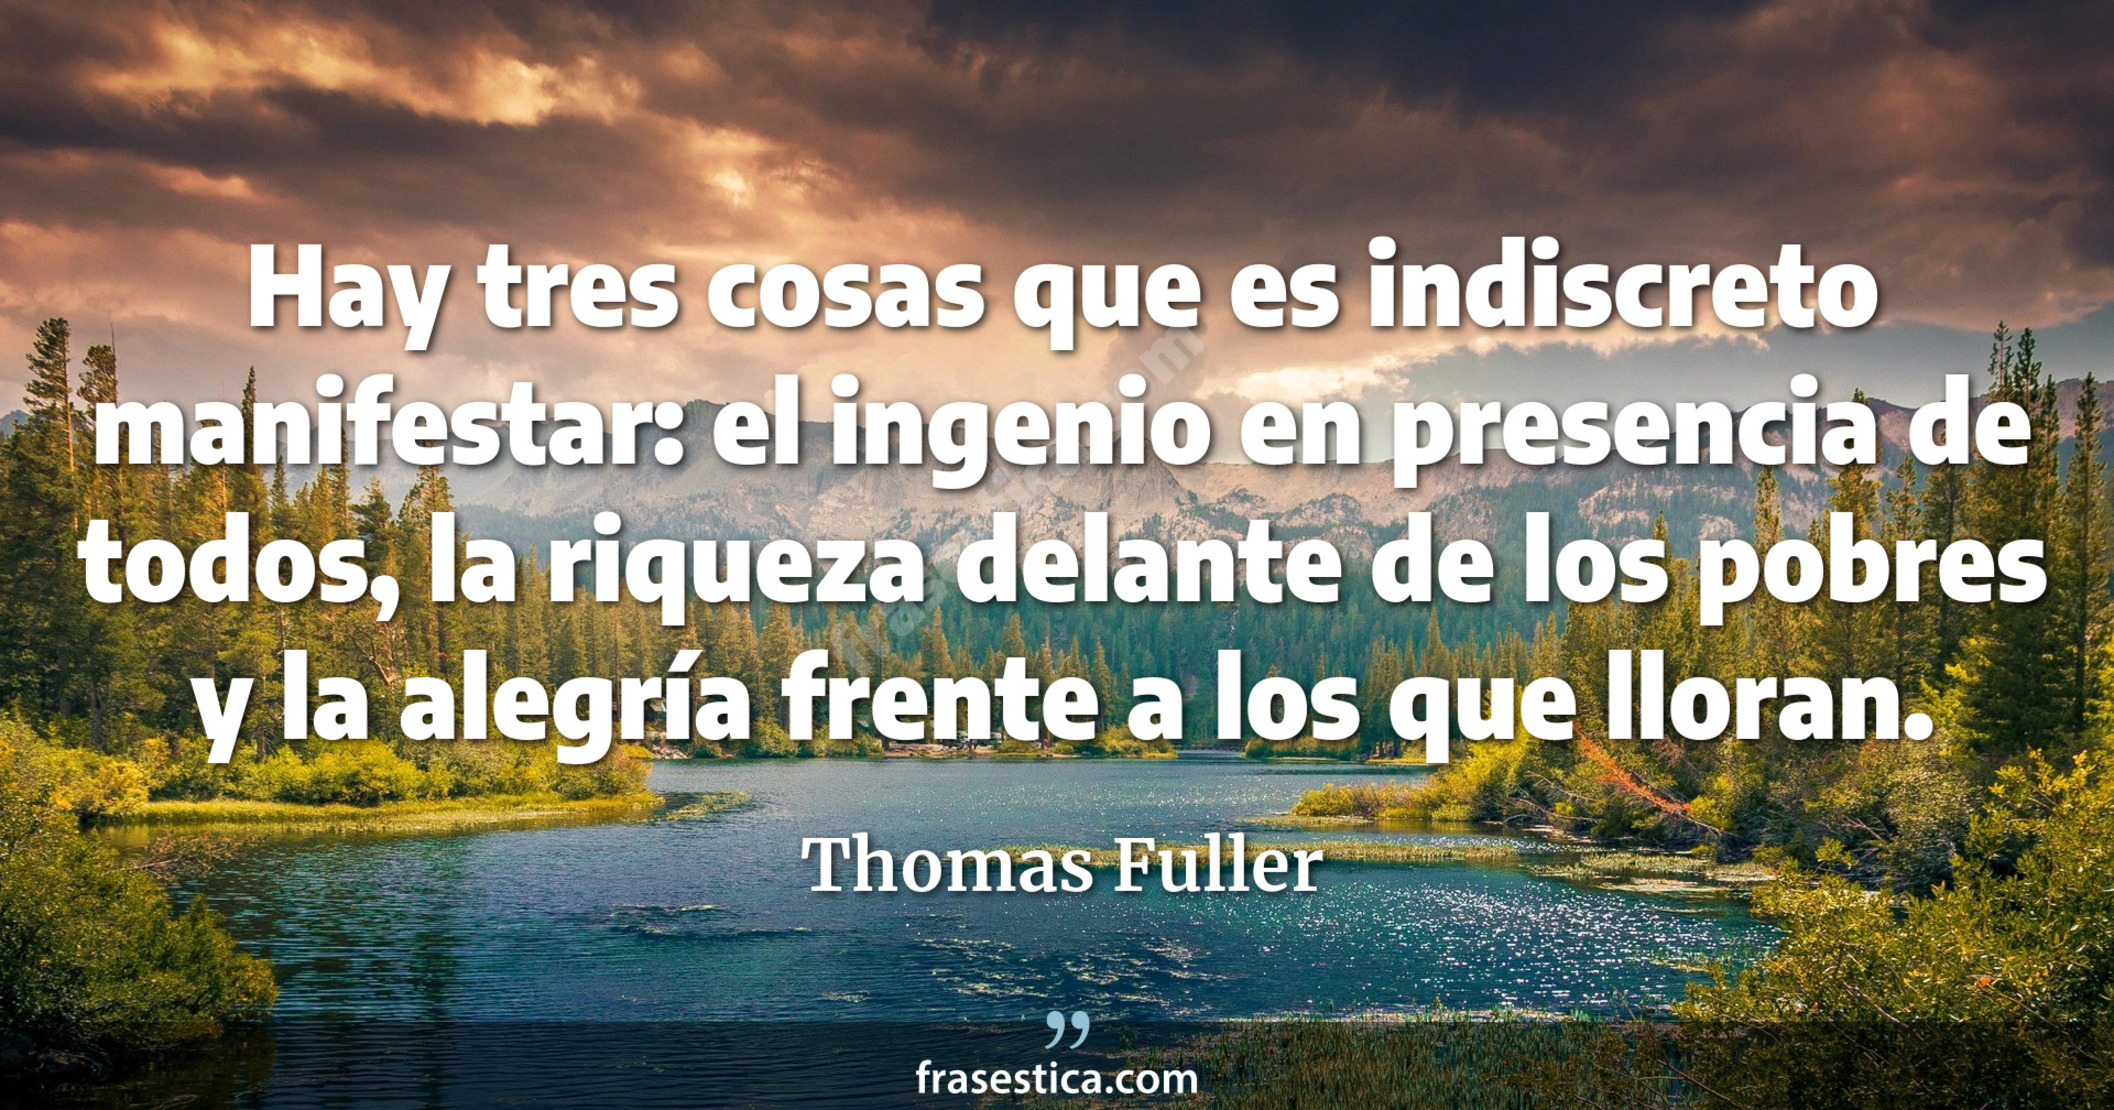 Hay tres cosas que es indiscreto manifestar: el ingenio en presencia de todos, la riqueza delante de los pobres y la alegría frente a los que lloran. - Thomas Fuller